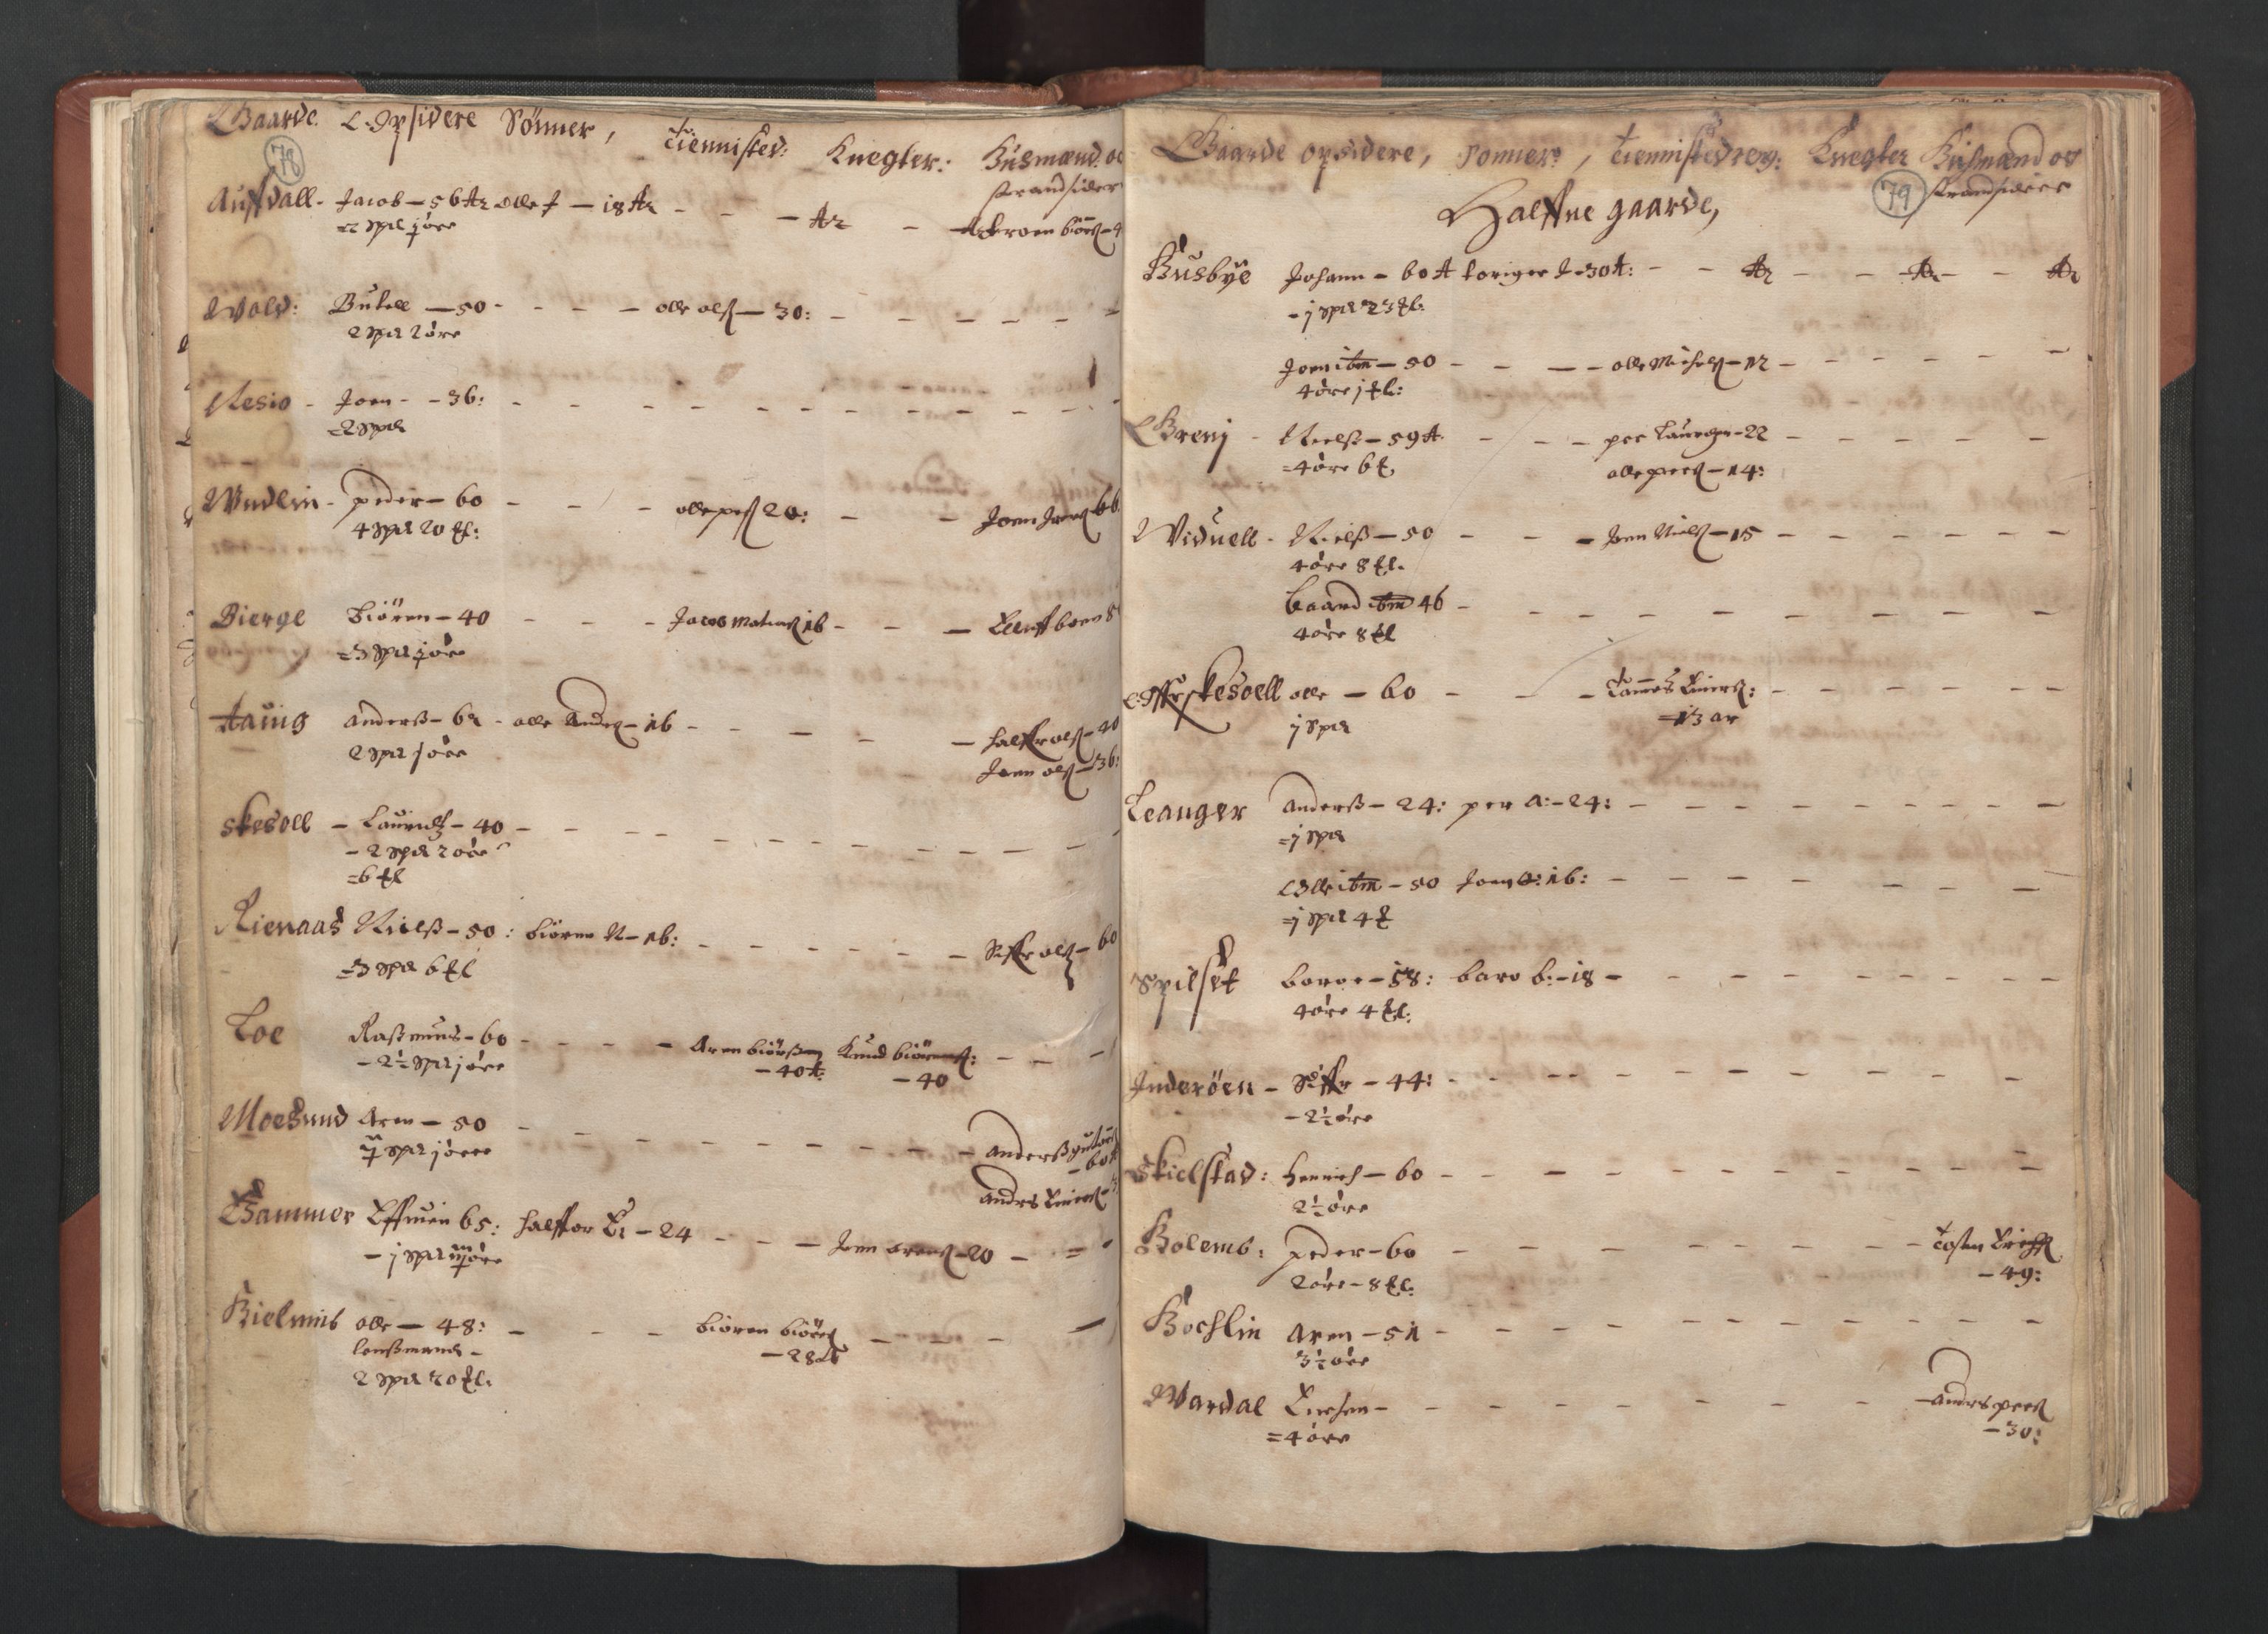 RA, Bailiff's Census 1664-1666, no. 19: Fosen fogderi, Inderøy fogderi, Selbu fogderi, Namdal fogderi and Stjørdal fogderi, 1664-1665, p. 78-79